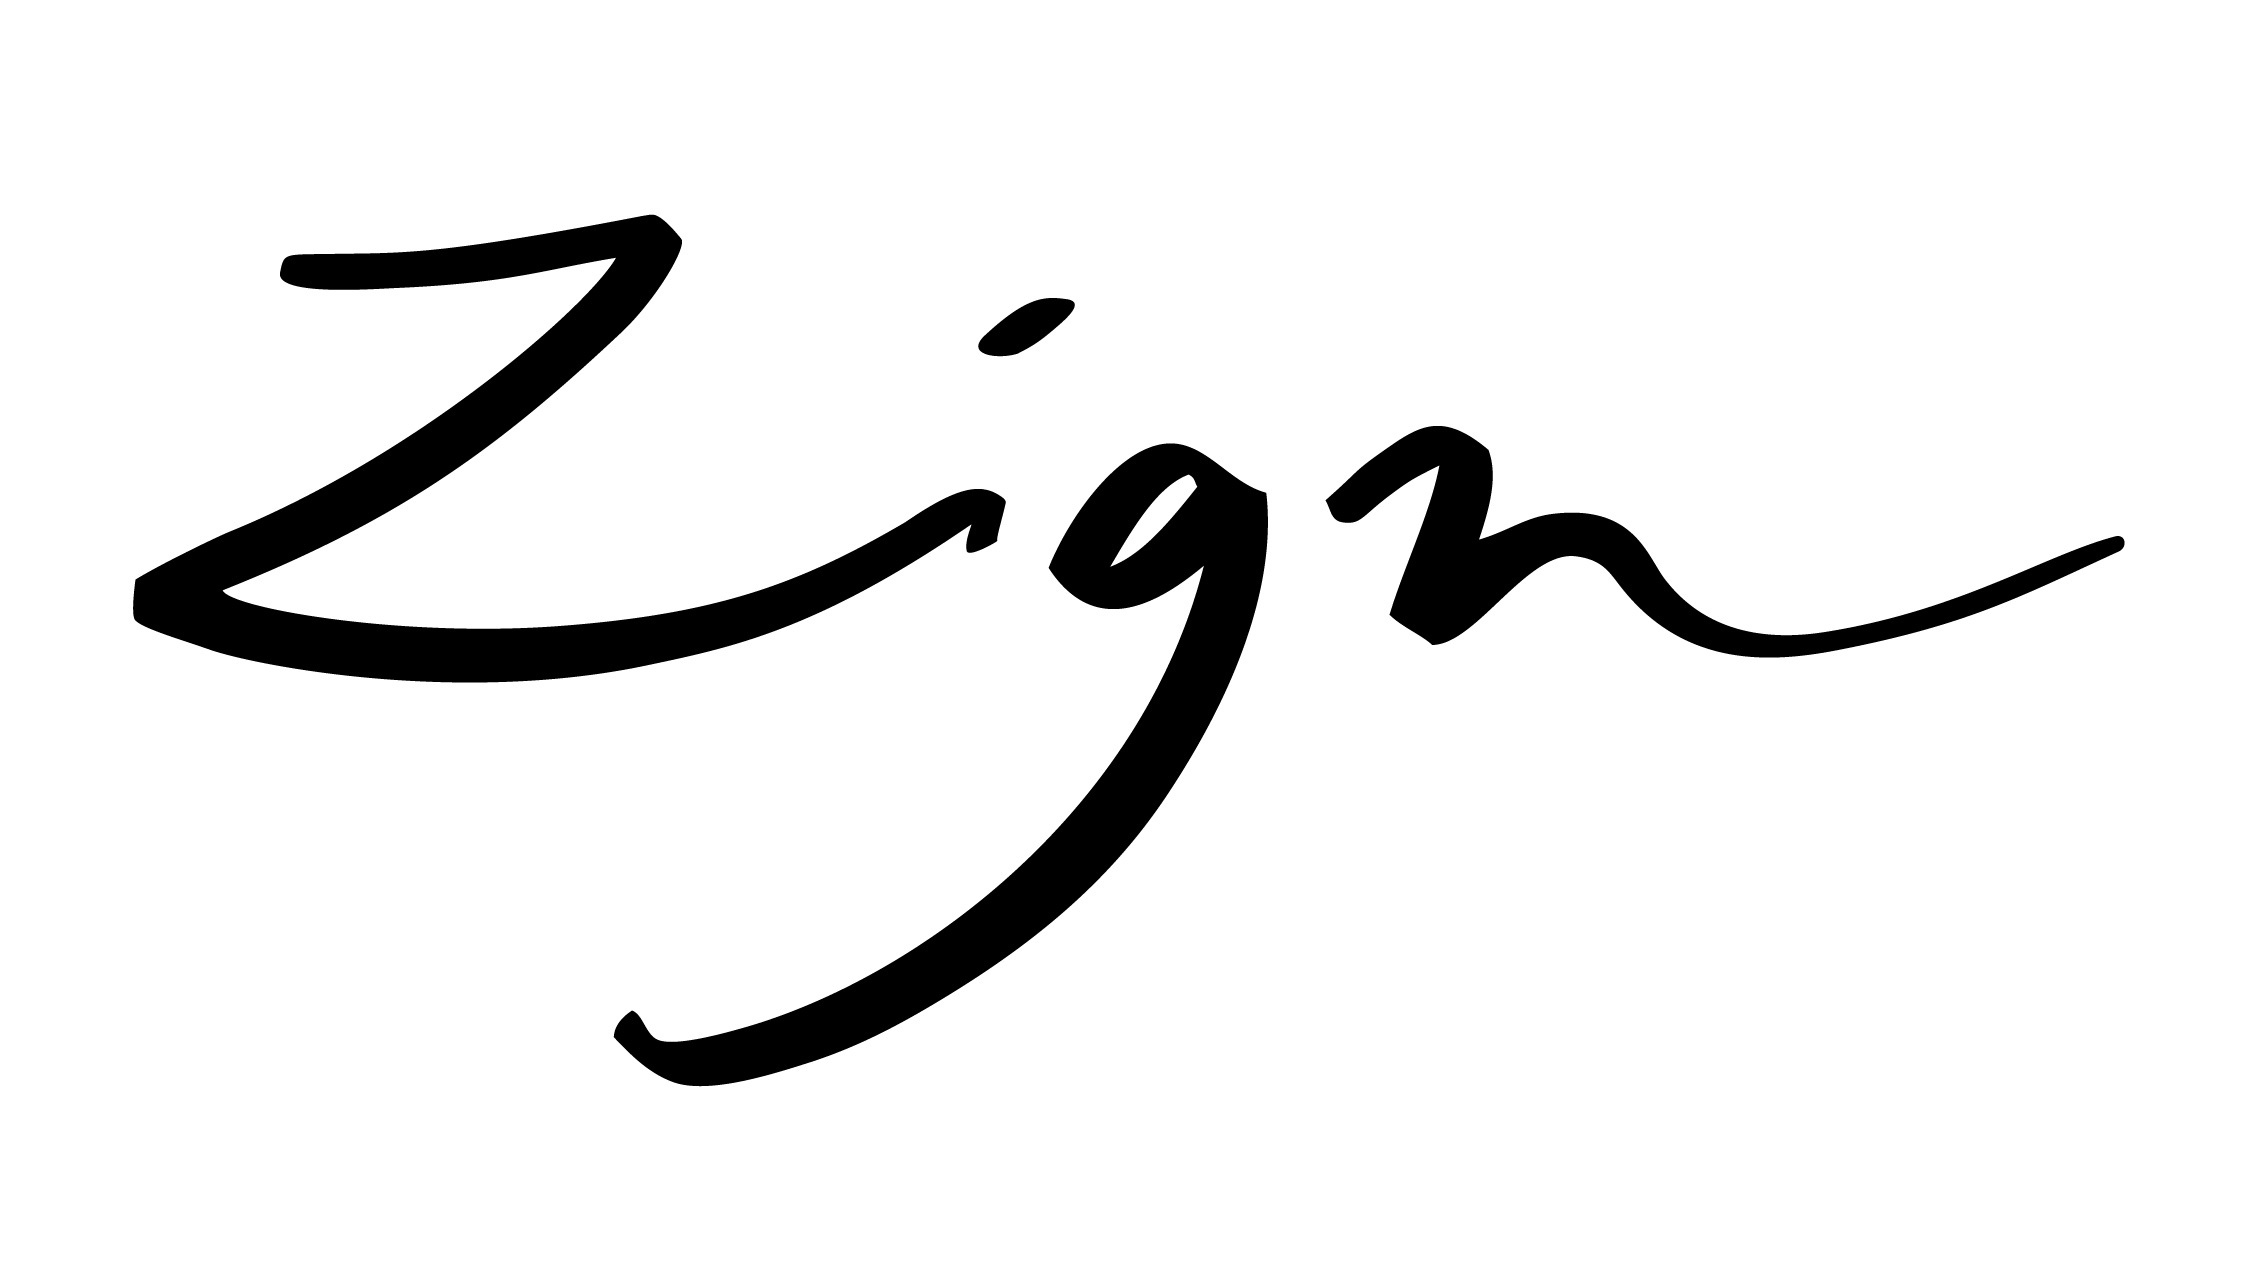 Logo of Piquee's client Zign